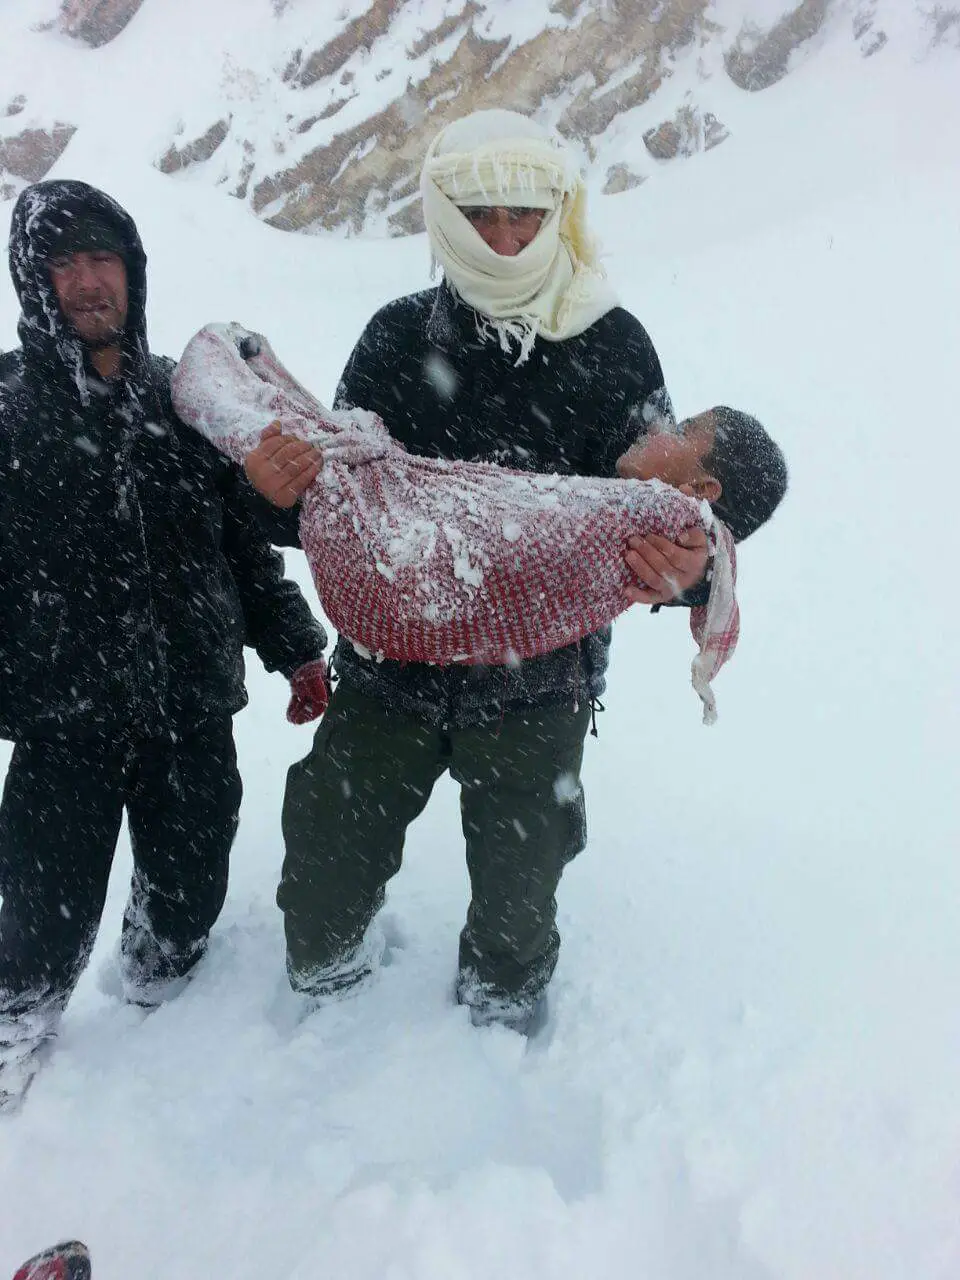 الطفل مجيد بدوي نجل خير، البالغ من العمر 8 سنوات، عثر عليه جثة هامدة عالقاً بين الثلوج